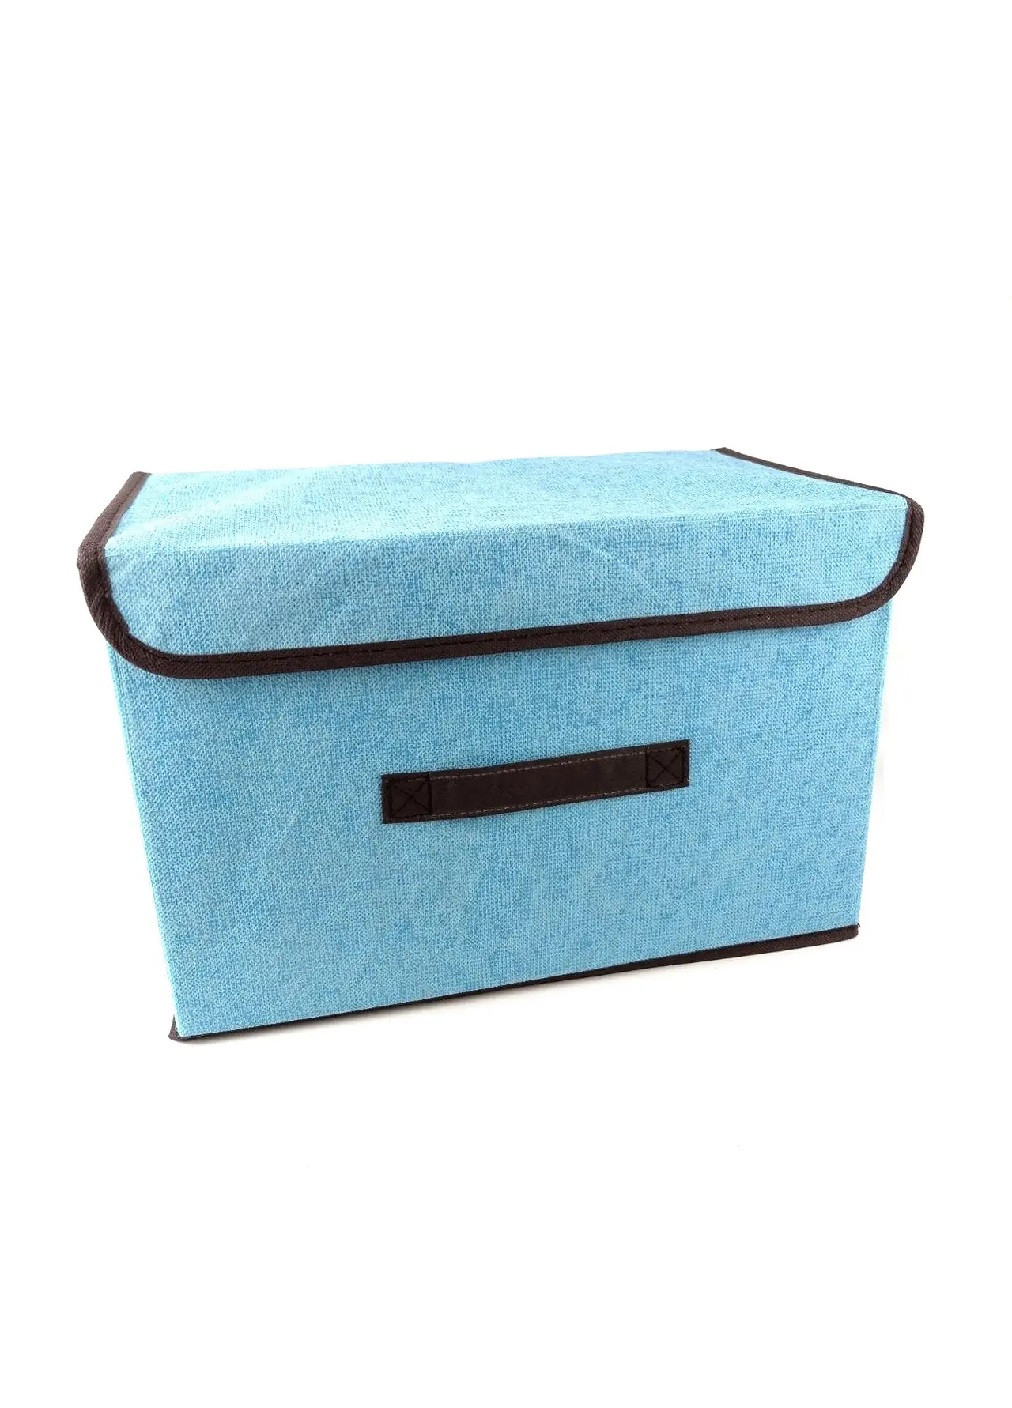 Органайзер ящик бокс для хранения вещей одежды белья игрушек с крышкой на липучке 37х23х23.5 см (474616-Prob) Голубой Unbranded (259112564)